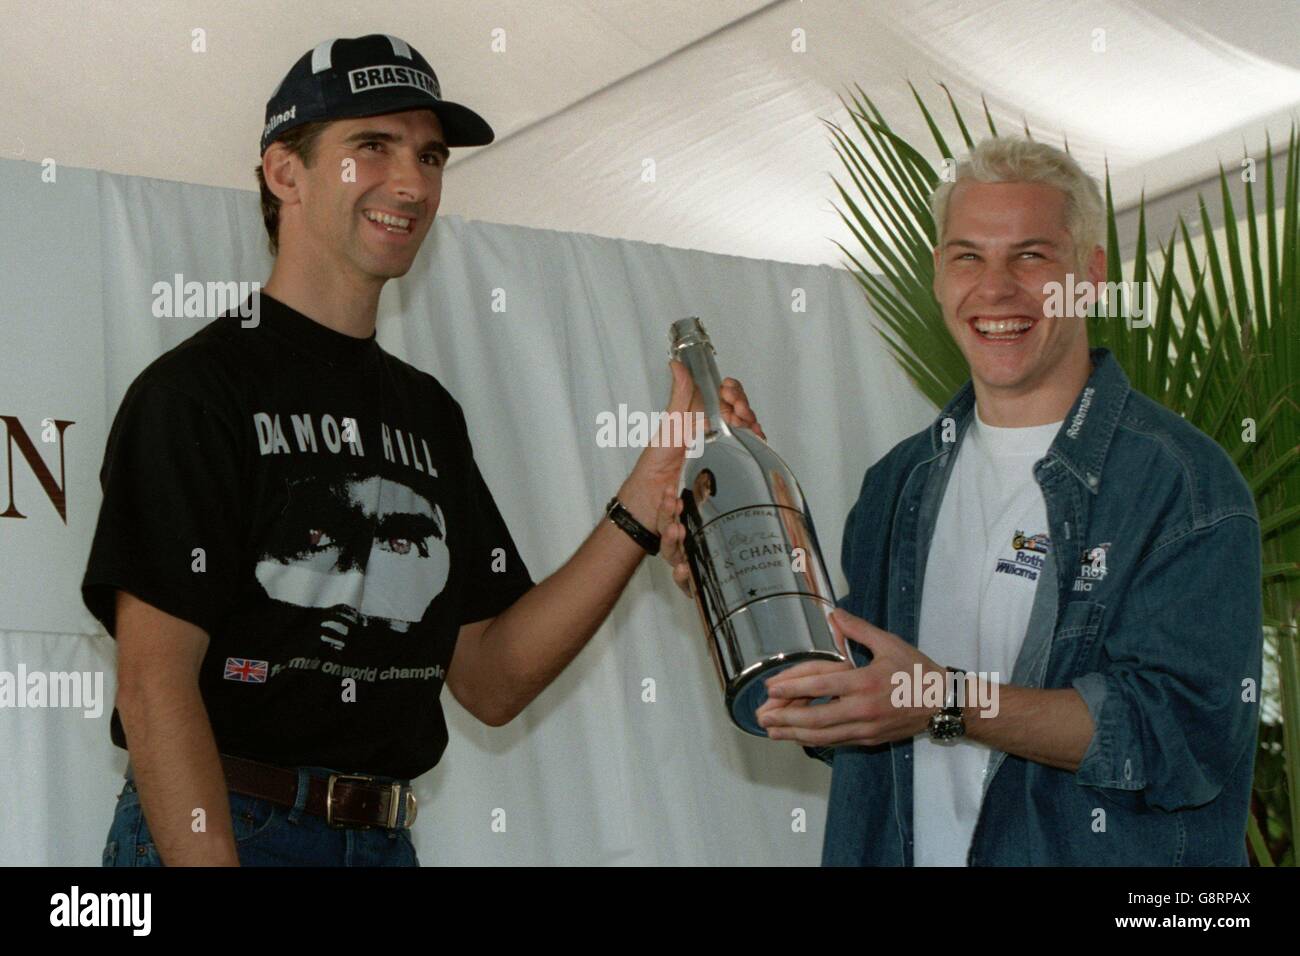 Formula uno Motor Racing - Gran Premio d'Europa. L'attuale campione del mondo Damon Hill (a sinistra) passa prematuramente la sua corona di campionato all'erede apparente Jacques Villeneuve (a destra) Foto Stock